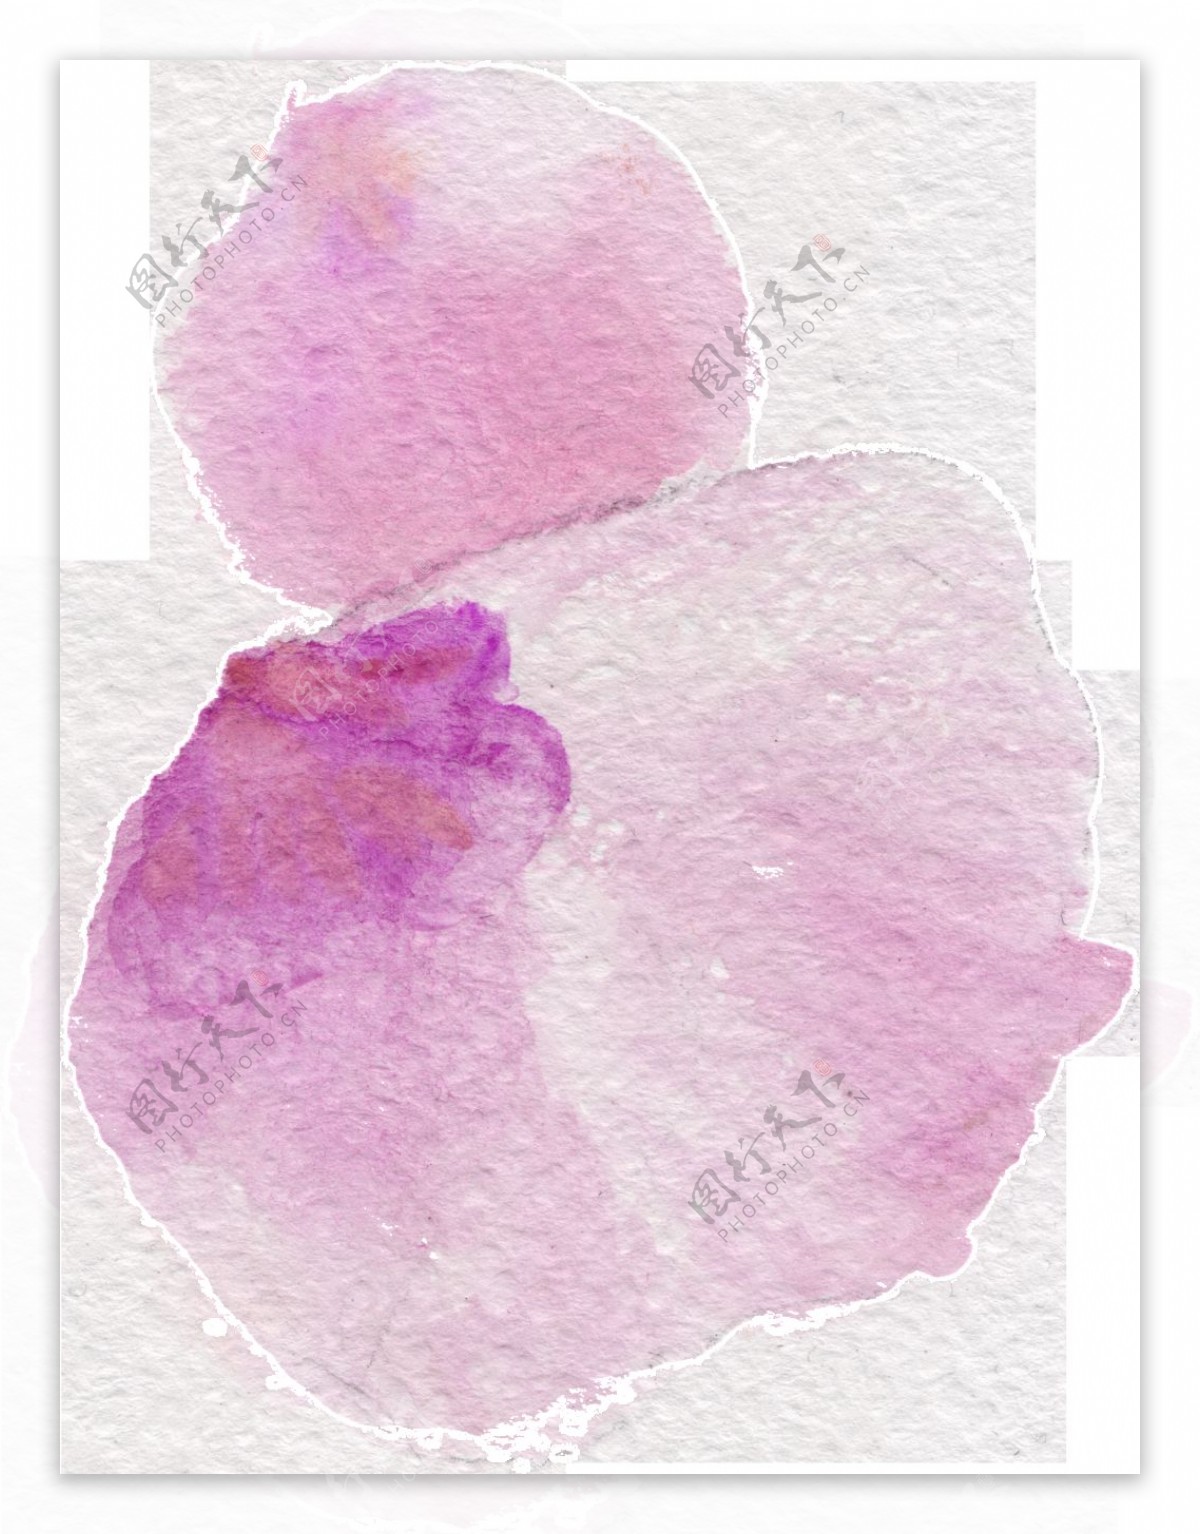 淡紫花瓣透明装饰素材